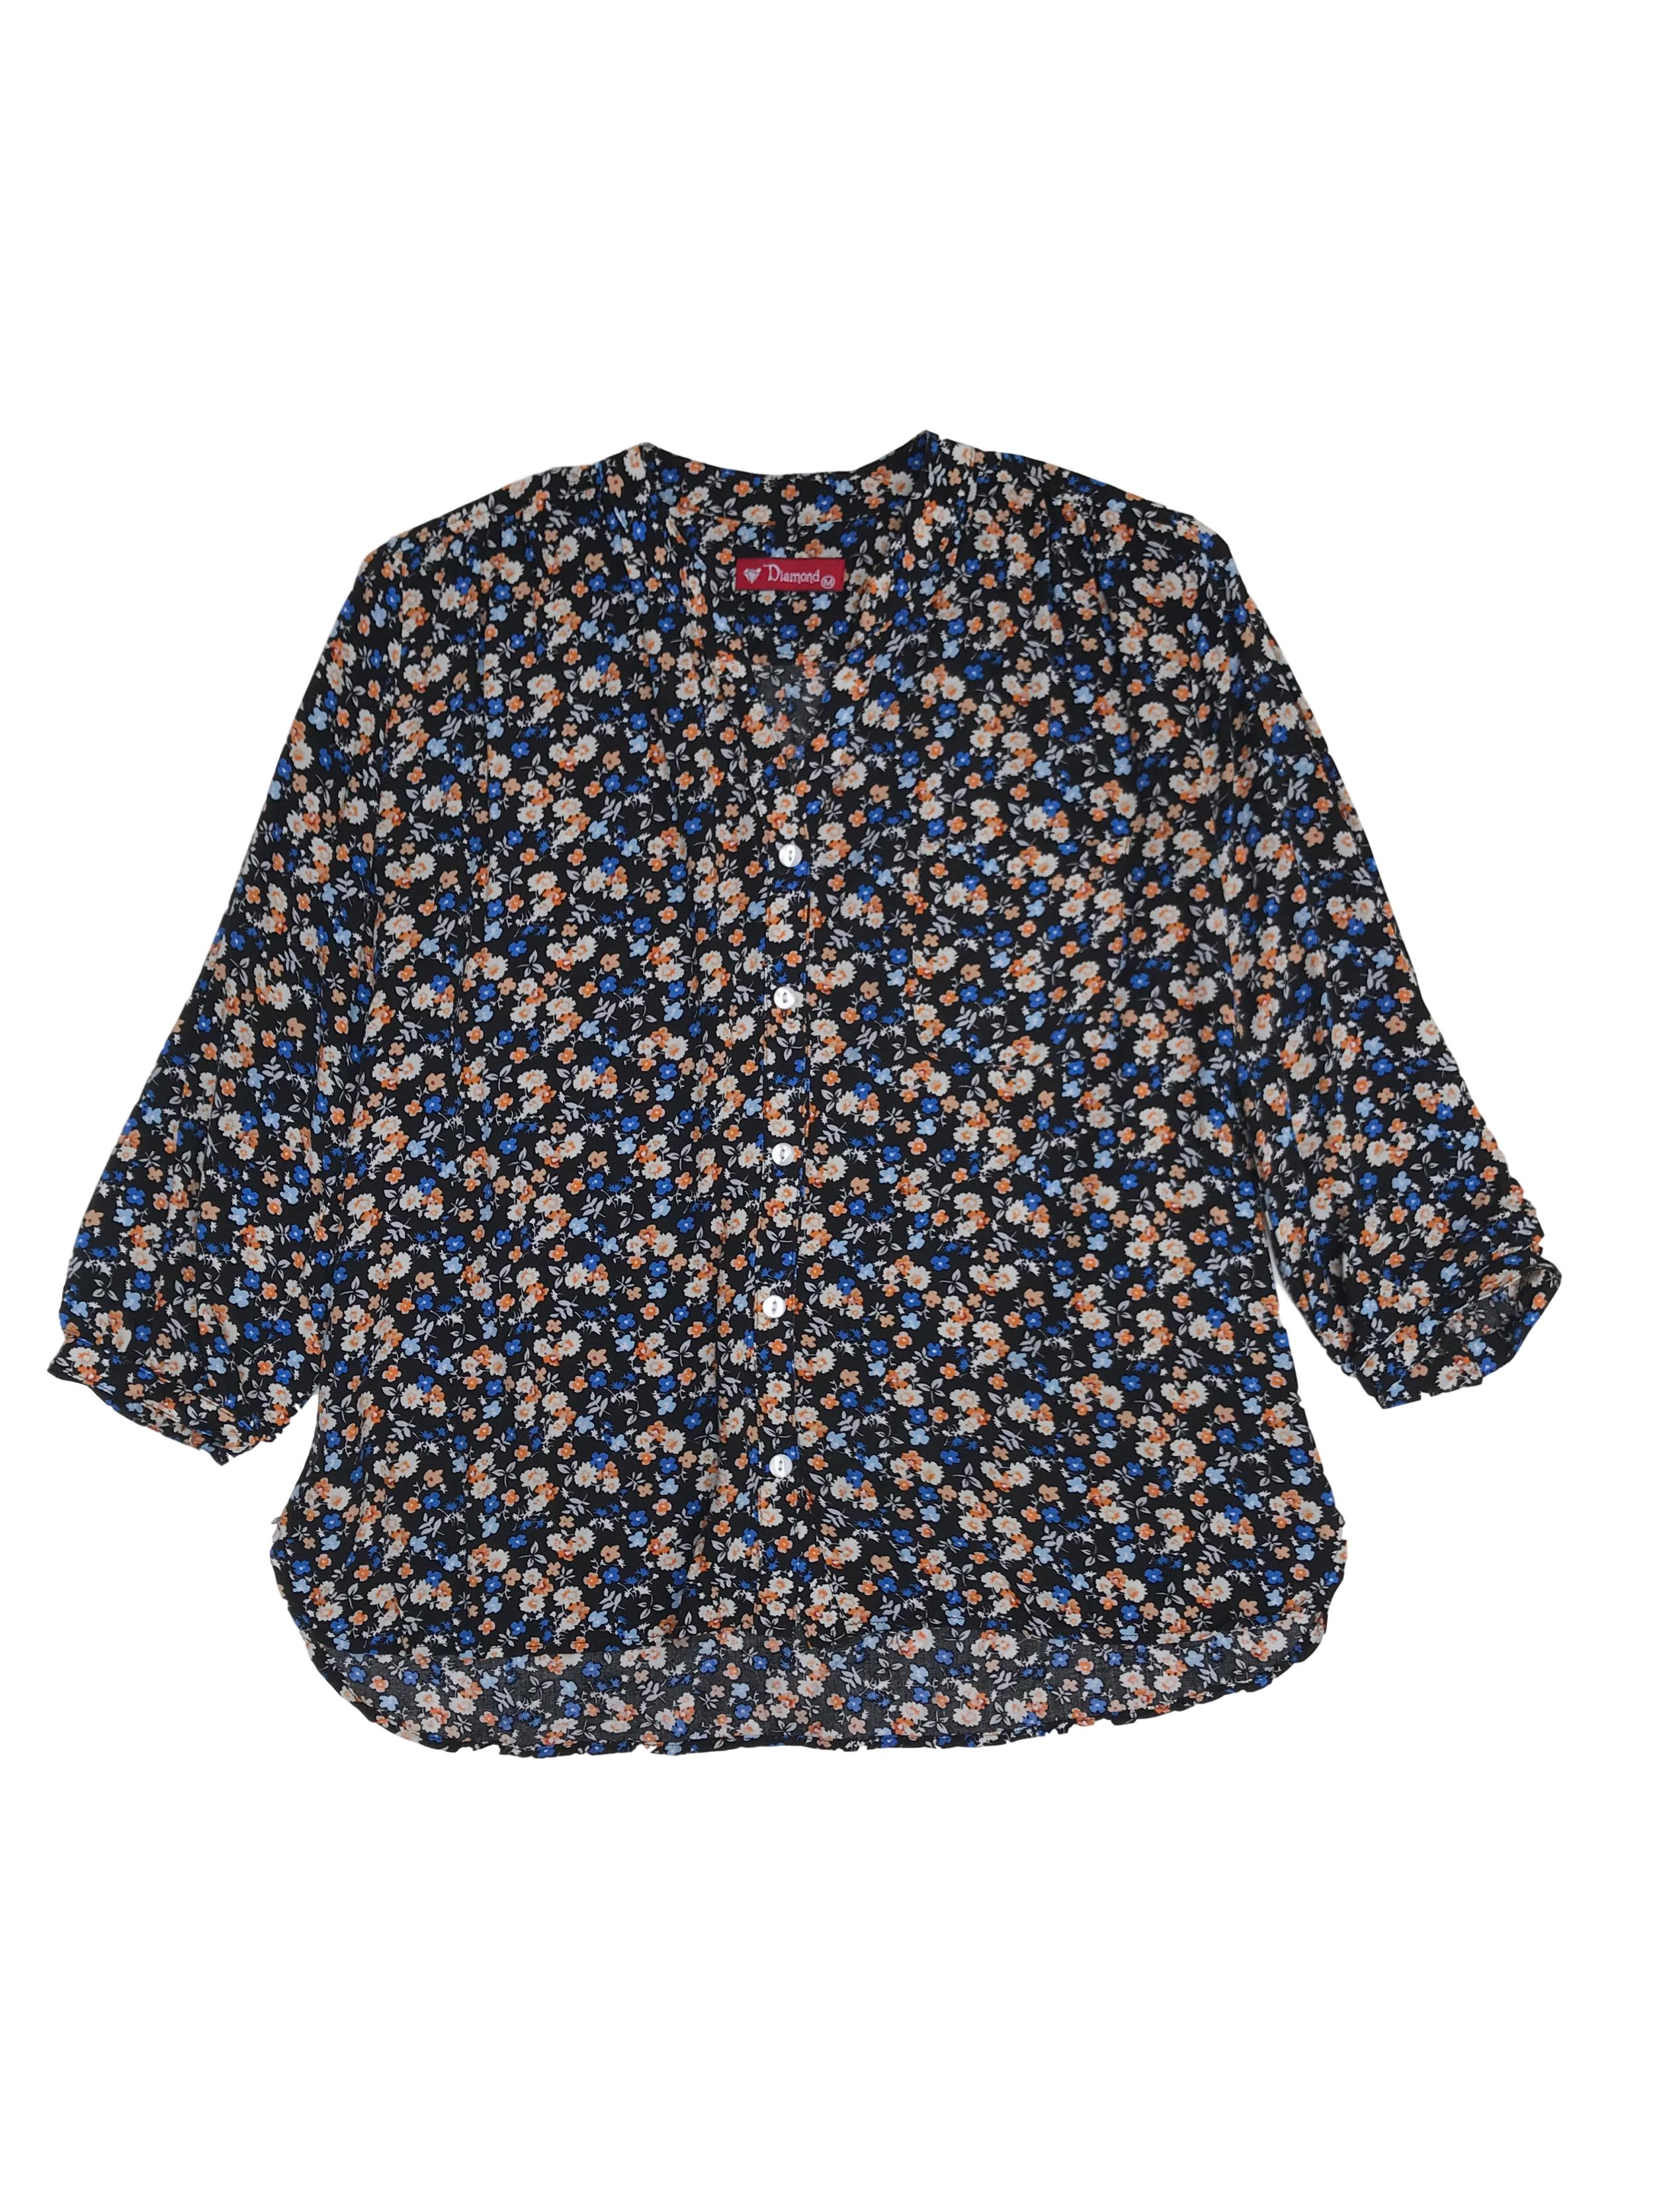 Blusa tipo chalis negra con estampado de florcitas, escote en V con fila de botones, bolsillo delantero y mangas 3/4